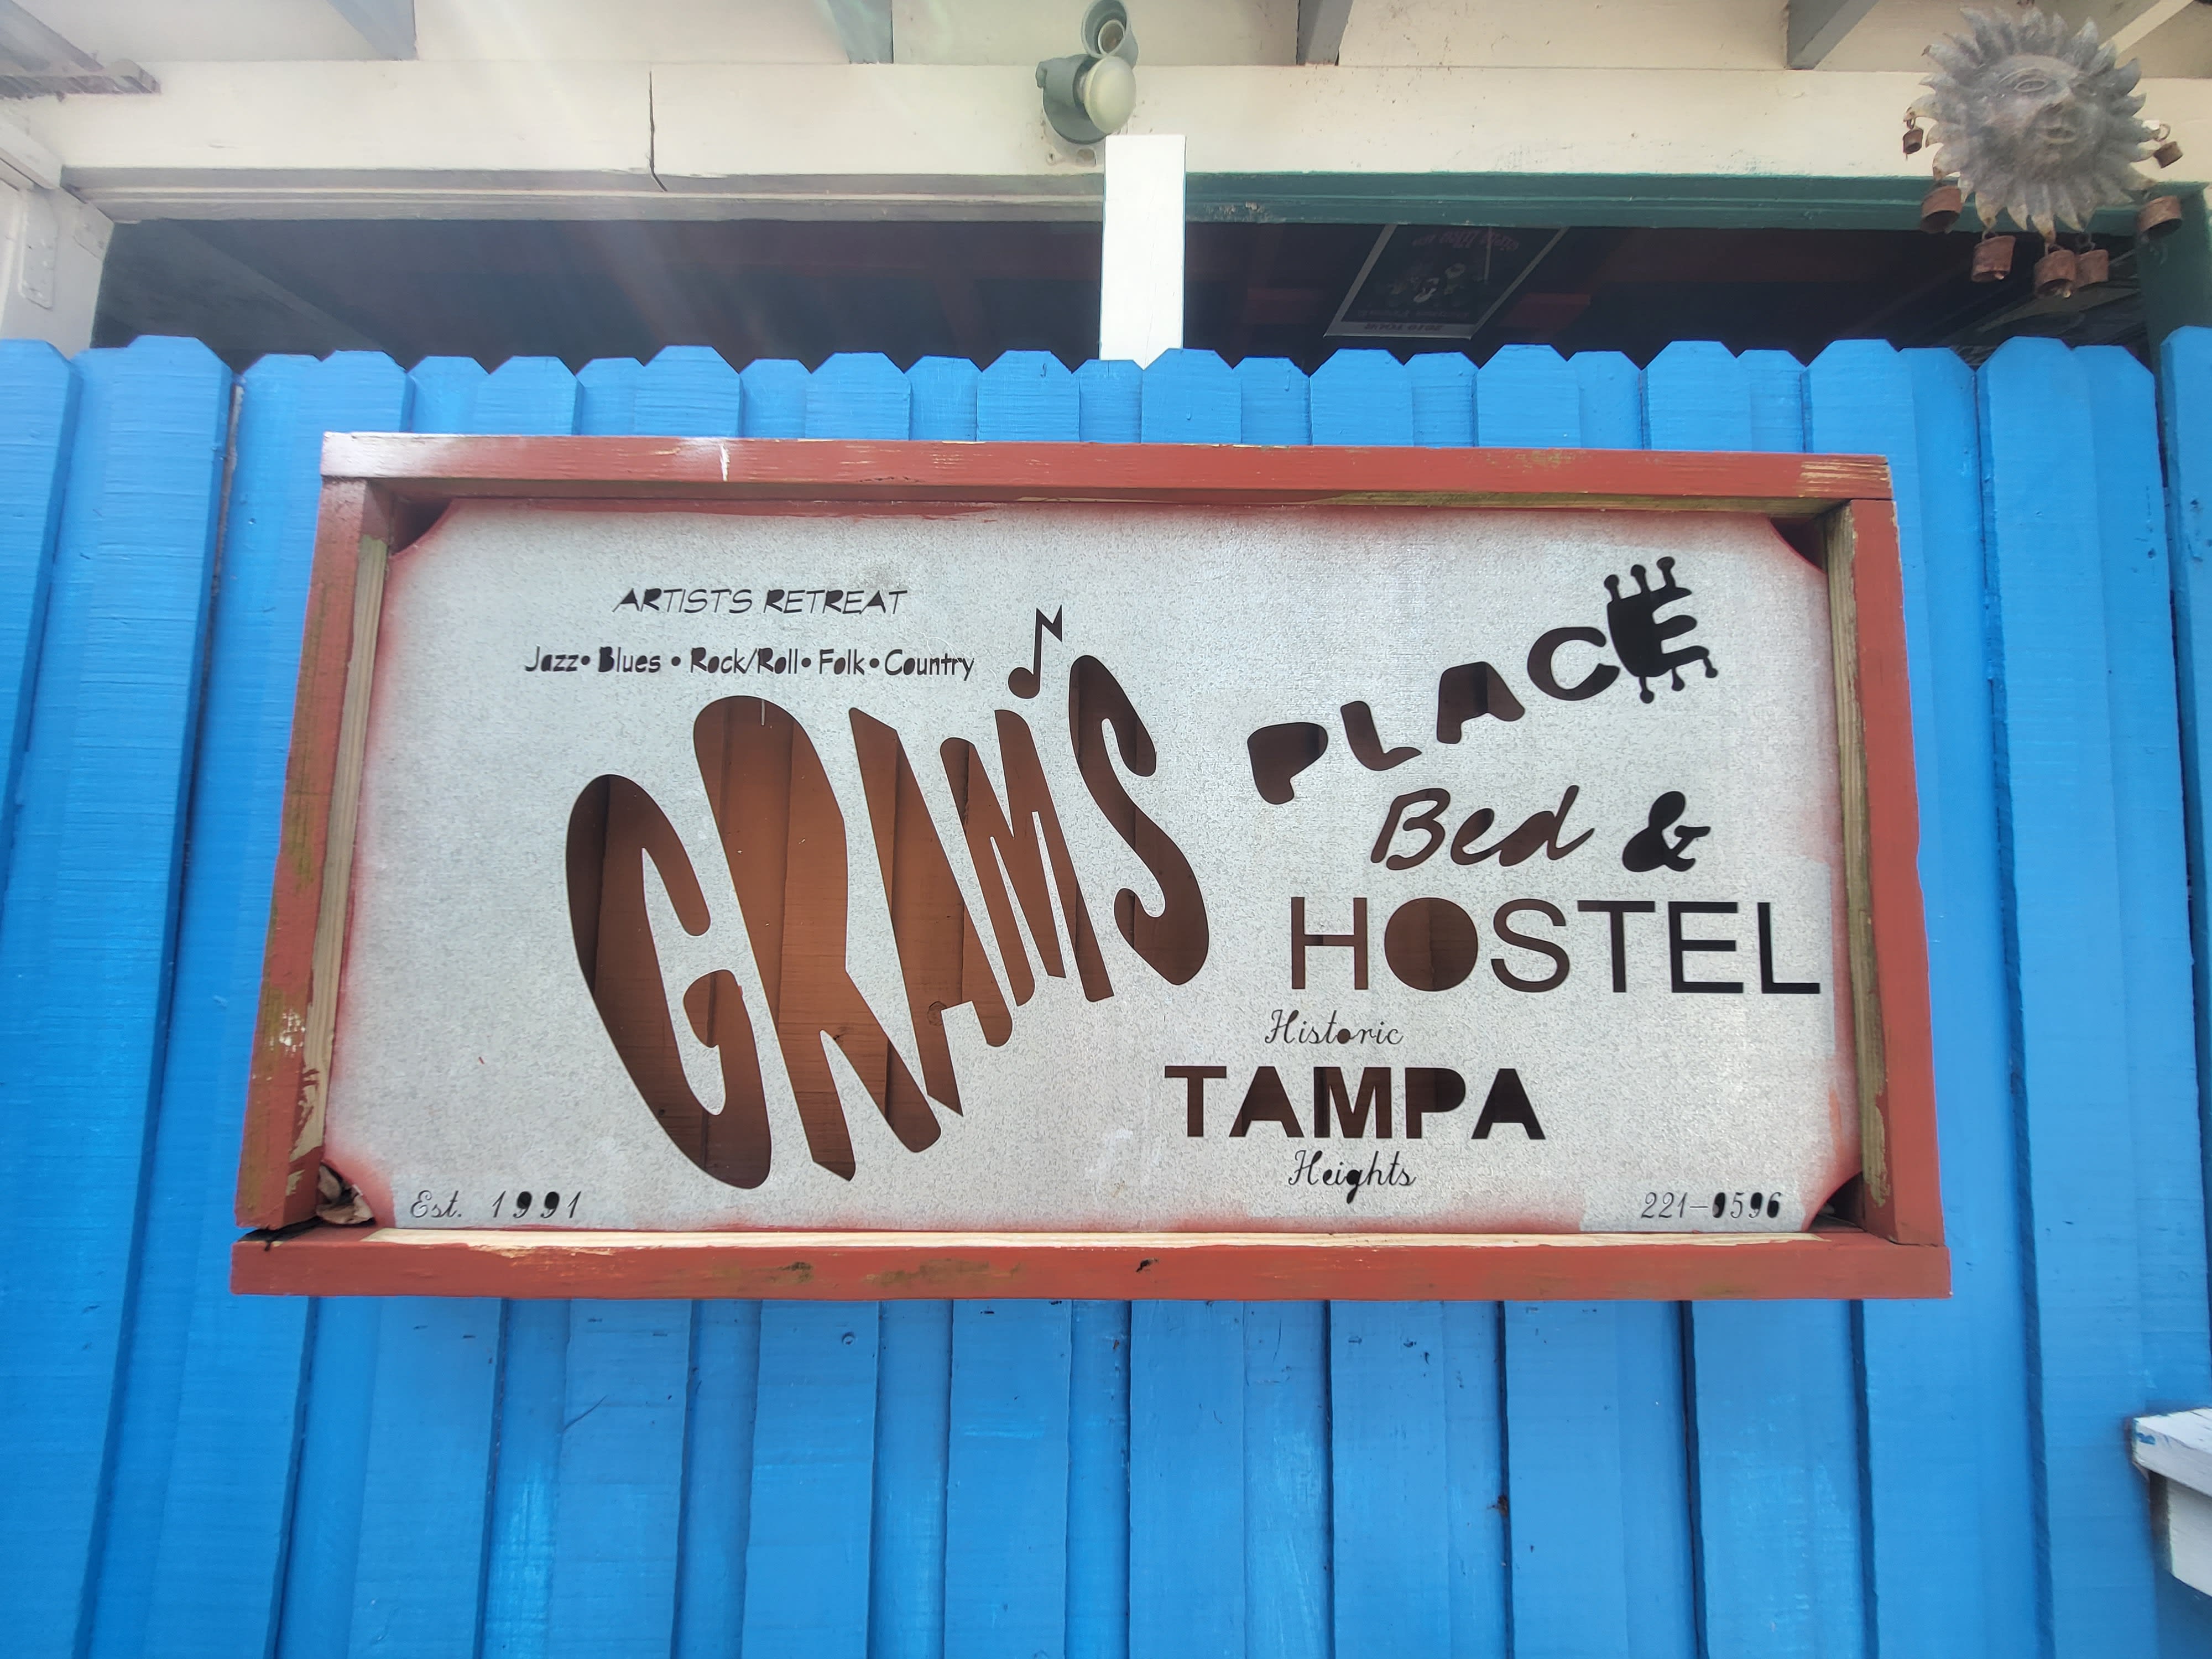 Gram's Place Bnb/hostel - Floride